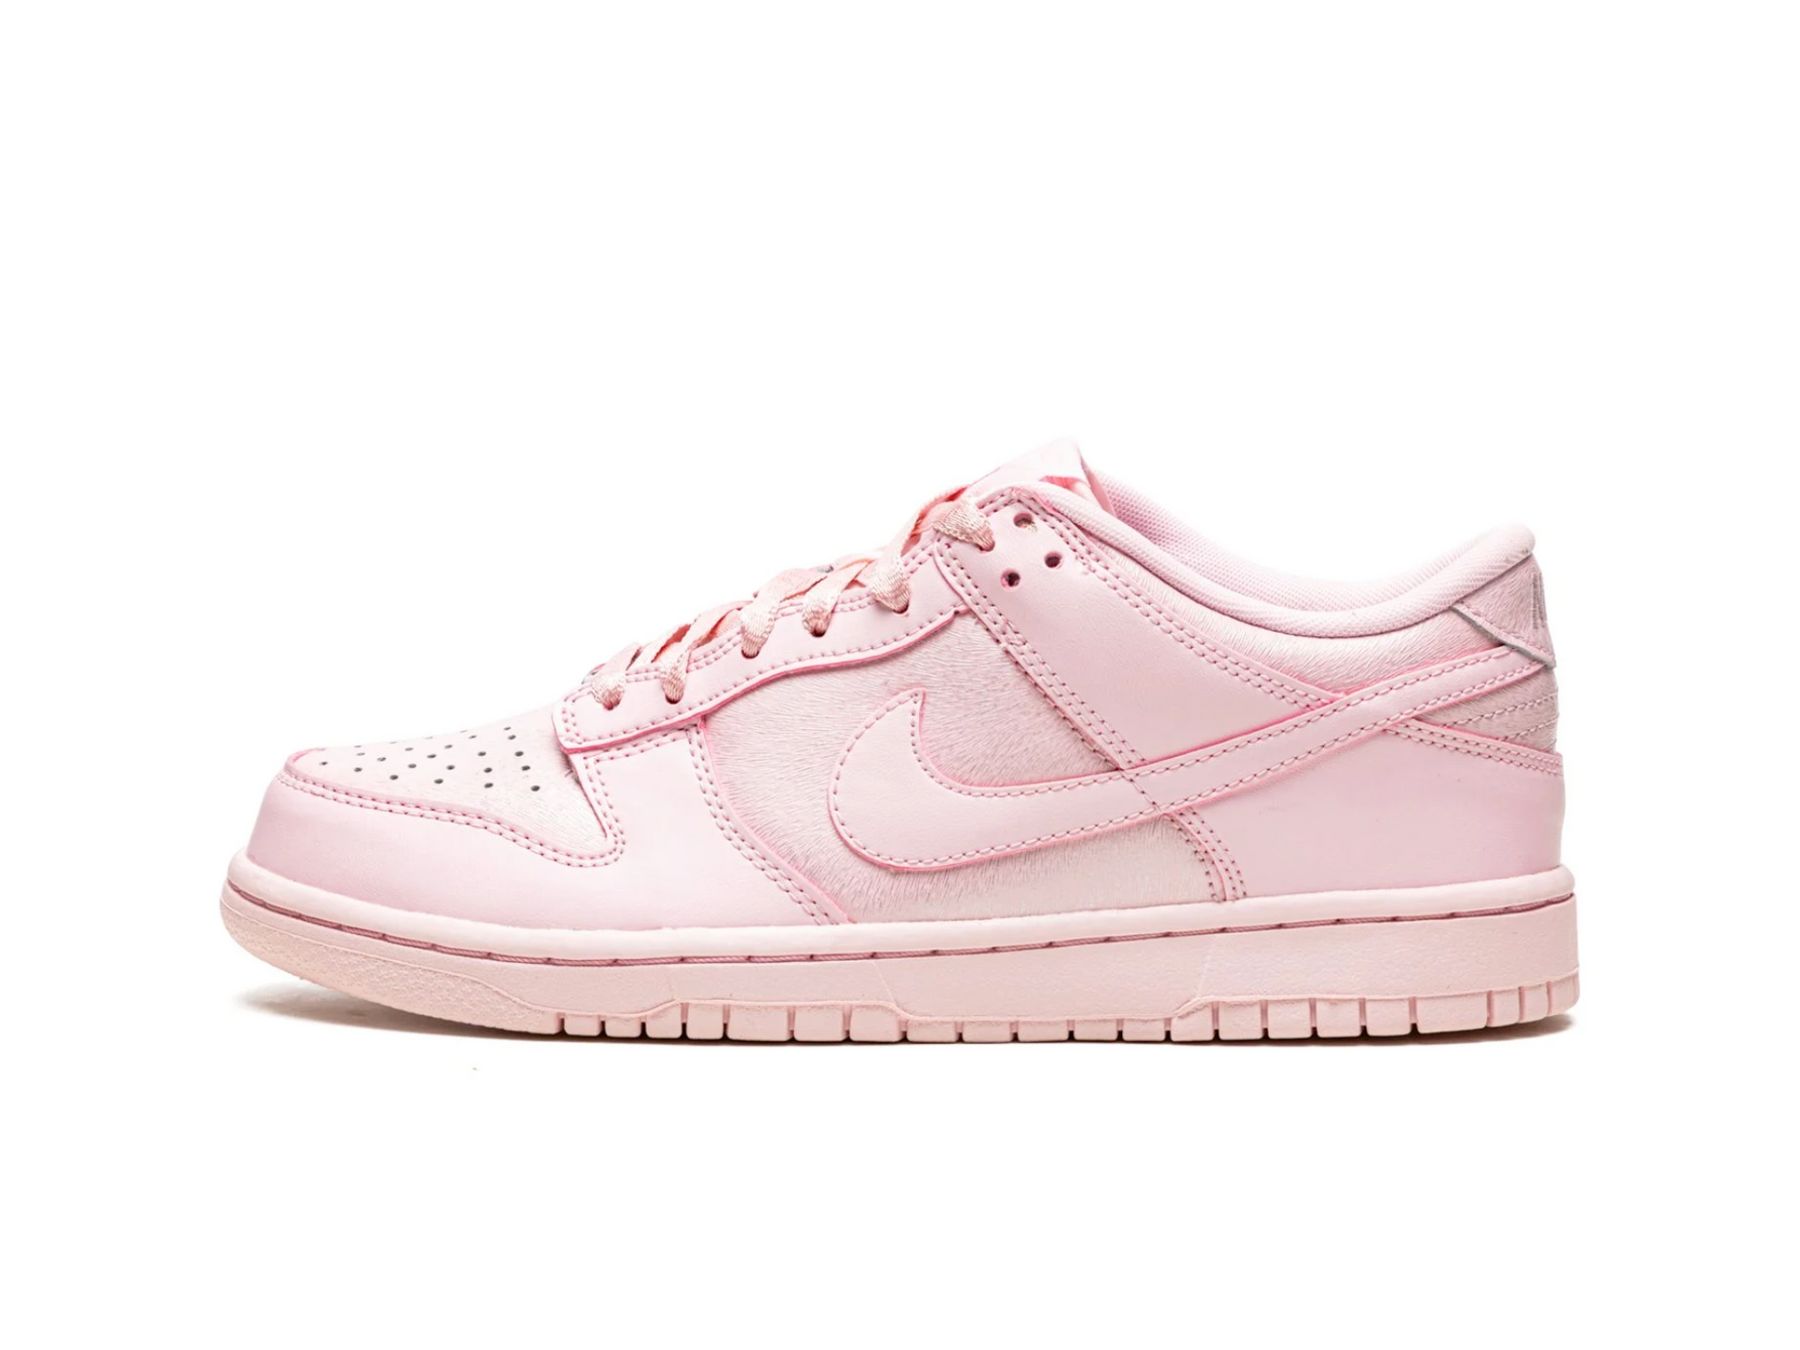 Nike Dunk Low "Prism Pink"